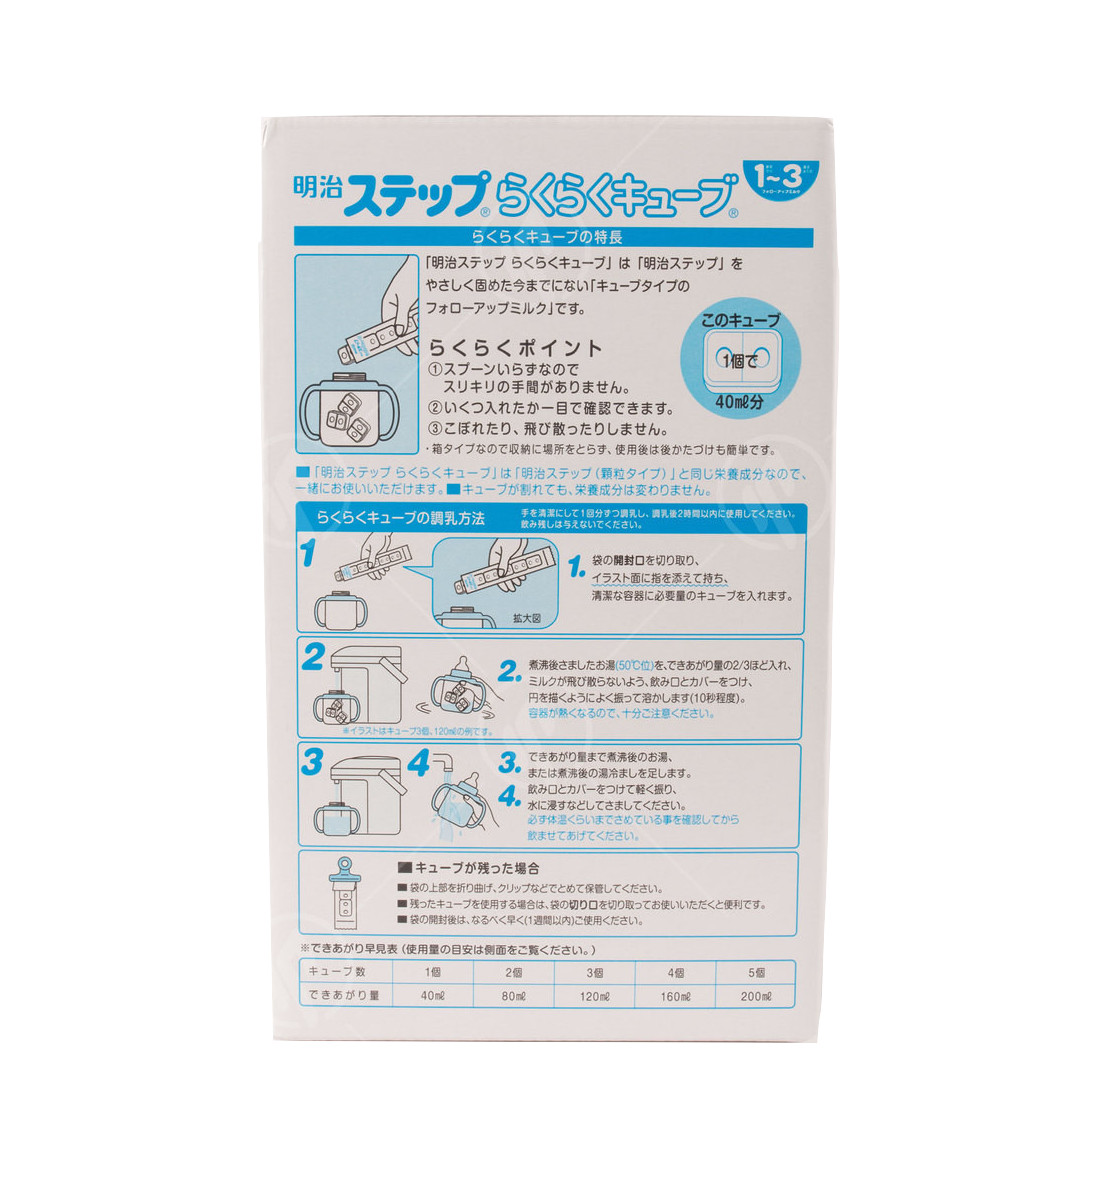 Hộp 24 thanh Sữa bột công thức Meiji Hohoemi Milk cho bé 1 đến 3 tuổi (28g/ thanh) - Nhập khẩu Nhật Bản